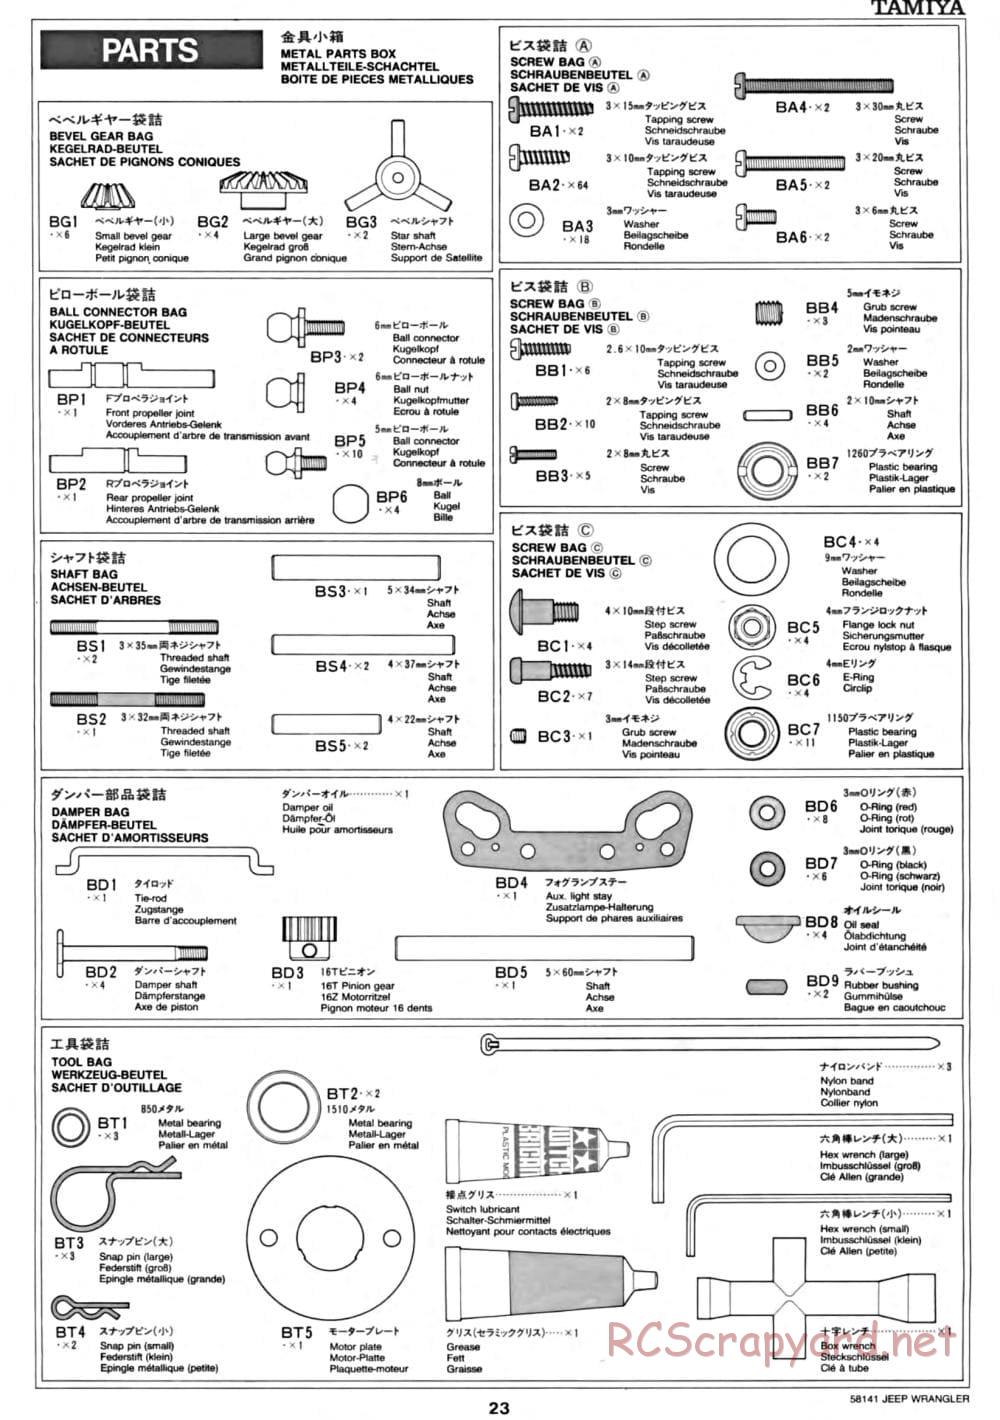 Tamiya - Jeep Wrangler - CC-01 Chassis - Manual - Page 23